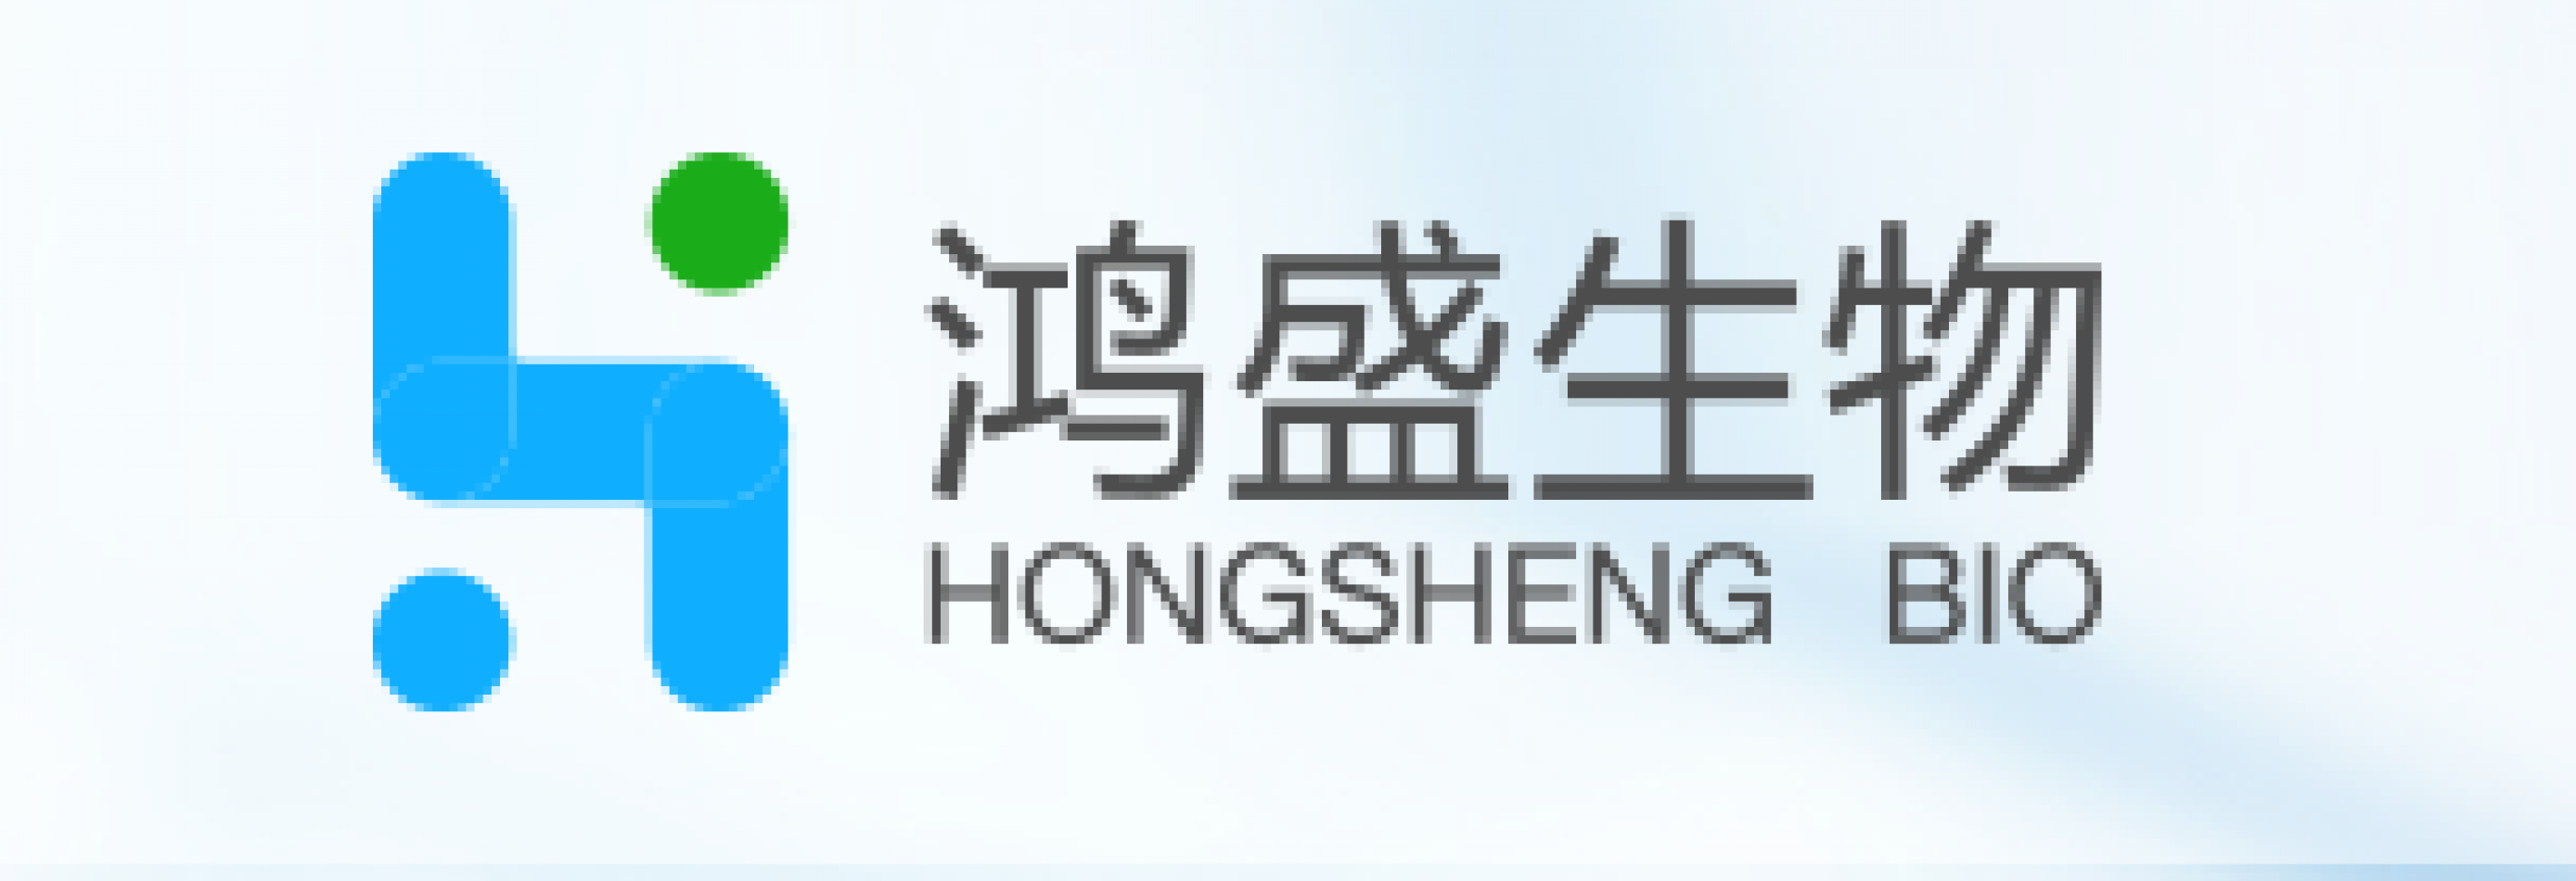 ZhongShan HongSheng Bio Tech Co., Ltd.